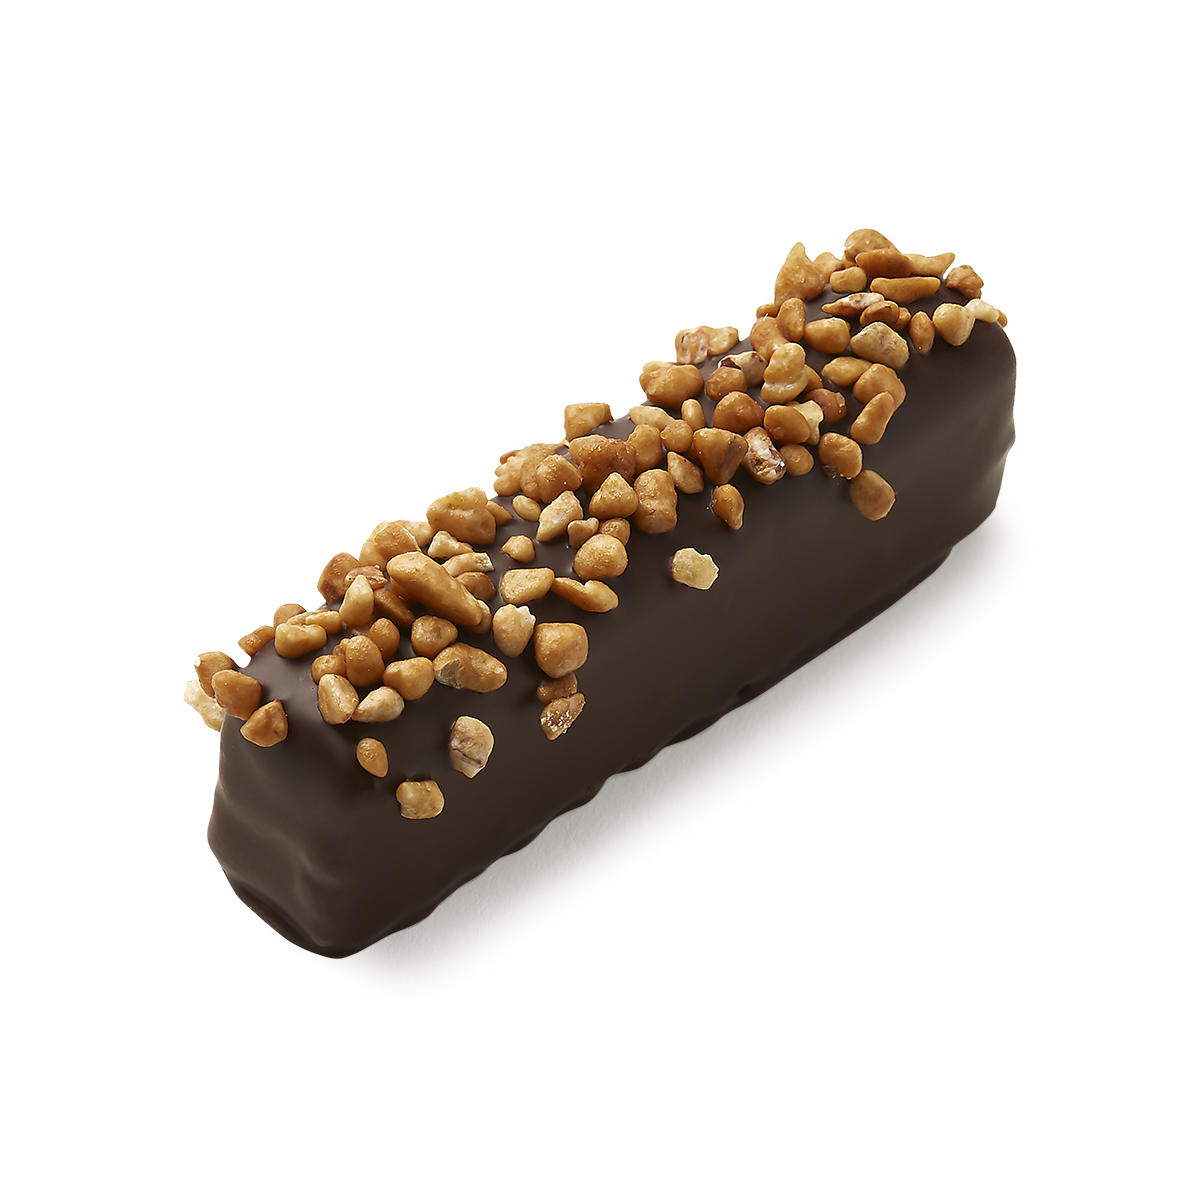 Dark chocolate bar with sprinkled hazelnuts